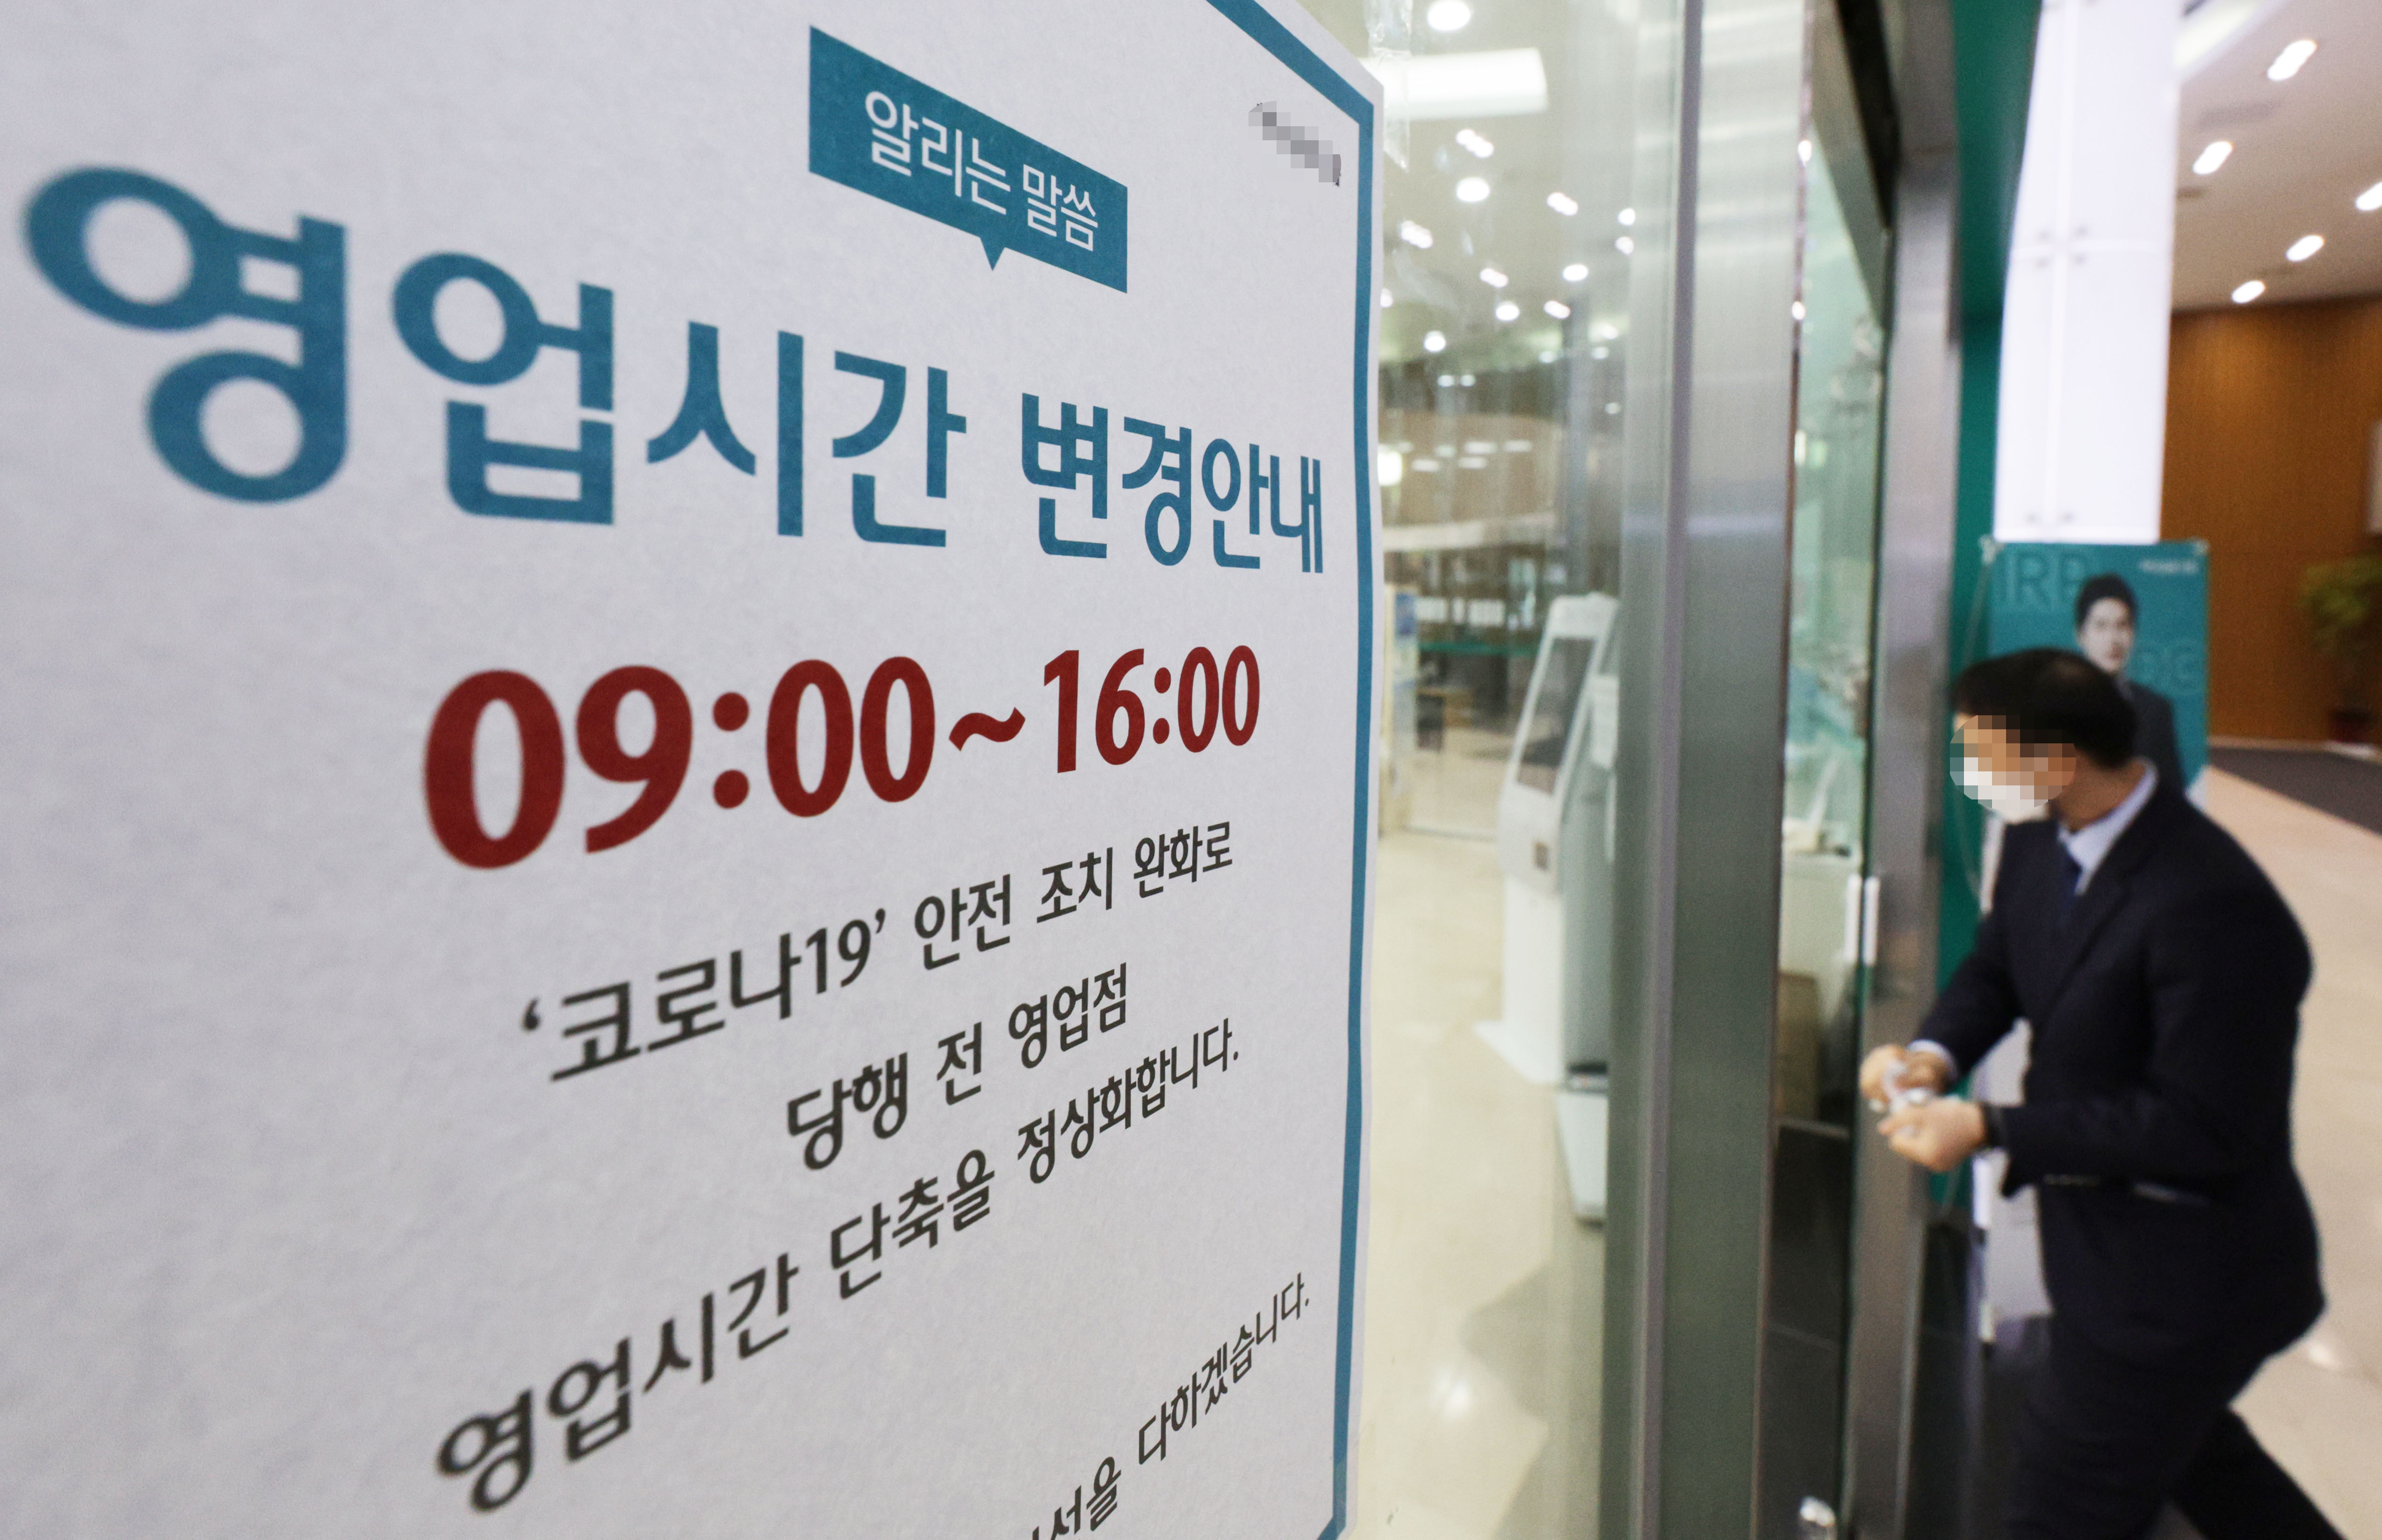 주요 시중은행과 저축은행들이 약 1년 반 만에 단축 영업을 중단하고 오는 30일부터 정상적으로 오전 9시에 문을 열고 오후 4시에 닫는다. 27일 금융권에 따르면 5대 시중은행(KB·신한·하나·우리·NH농협은행)을 포함한 주요 은행들은 이날 오후 4시 영업시간 정상화 관련 지침을 사내에 공지하고 각 지점에도 준비 사항 등을 내려보냈다. 이날 오후 서울 시내 한 은행에 영업시간 변경을 알리는 안내문이 부착되어 있다. 2023.1.27 연합뉴스